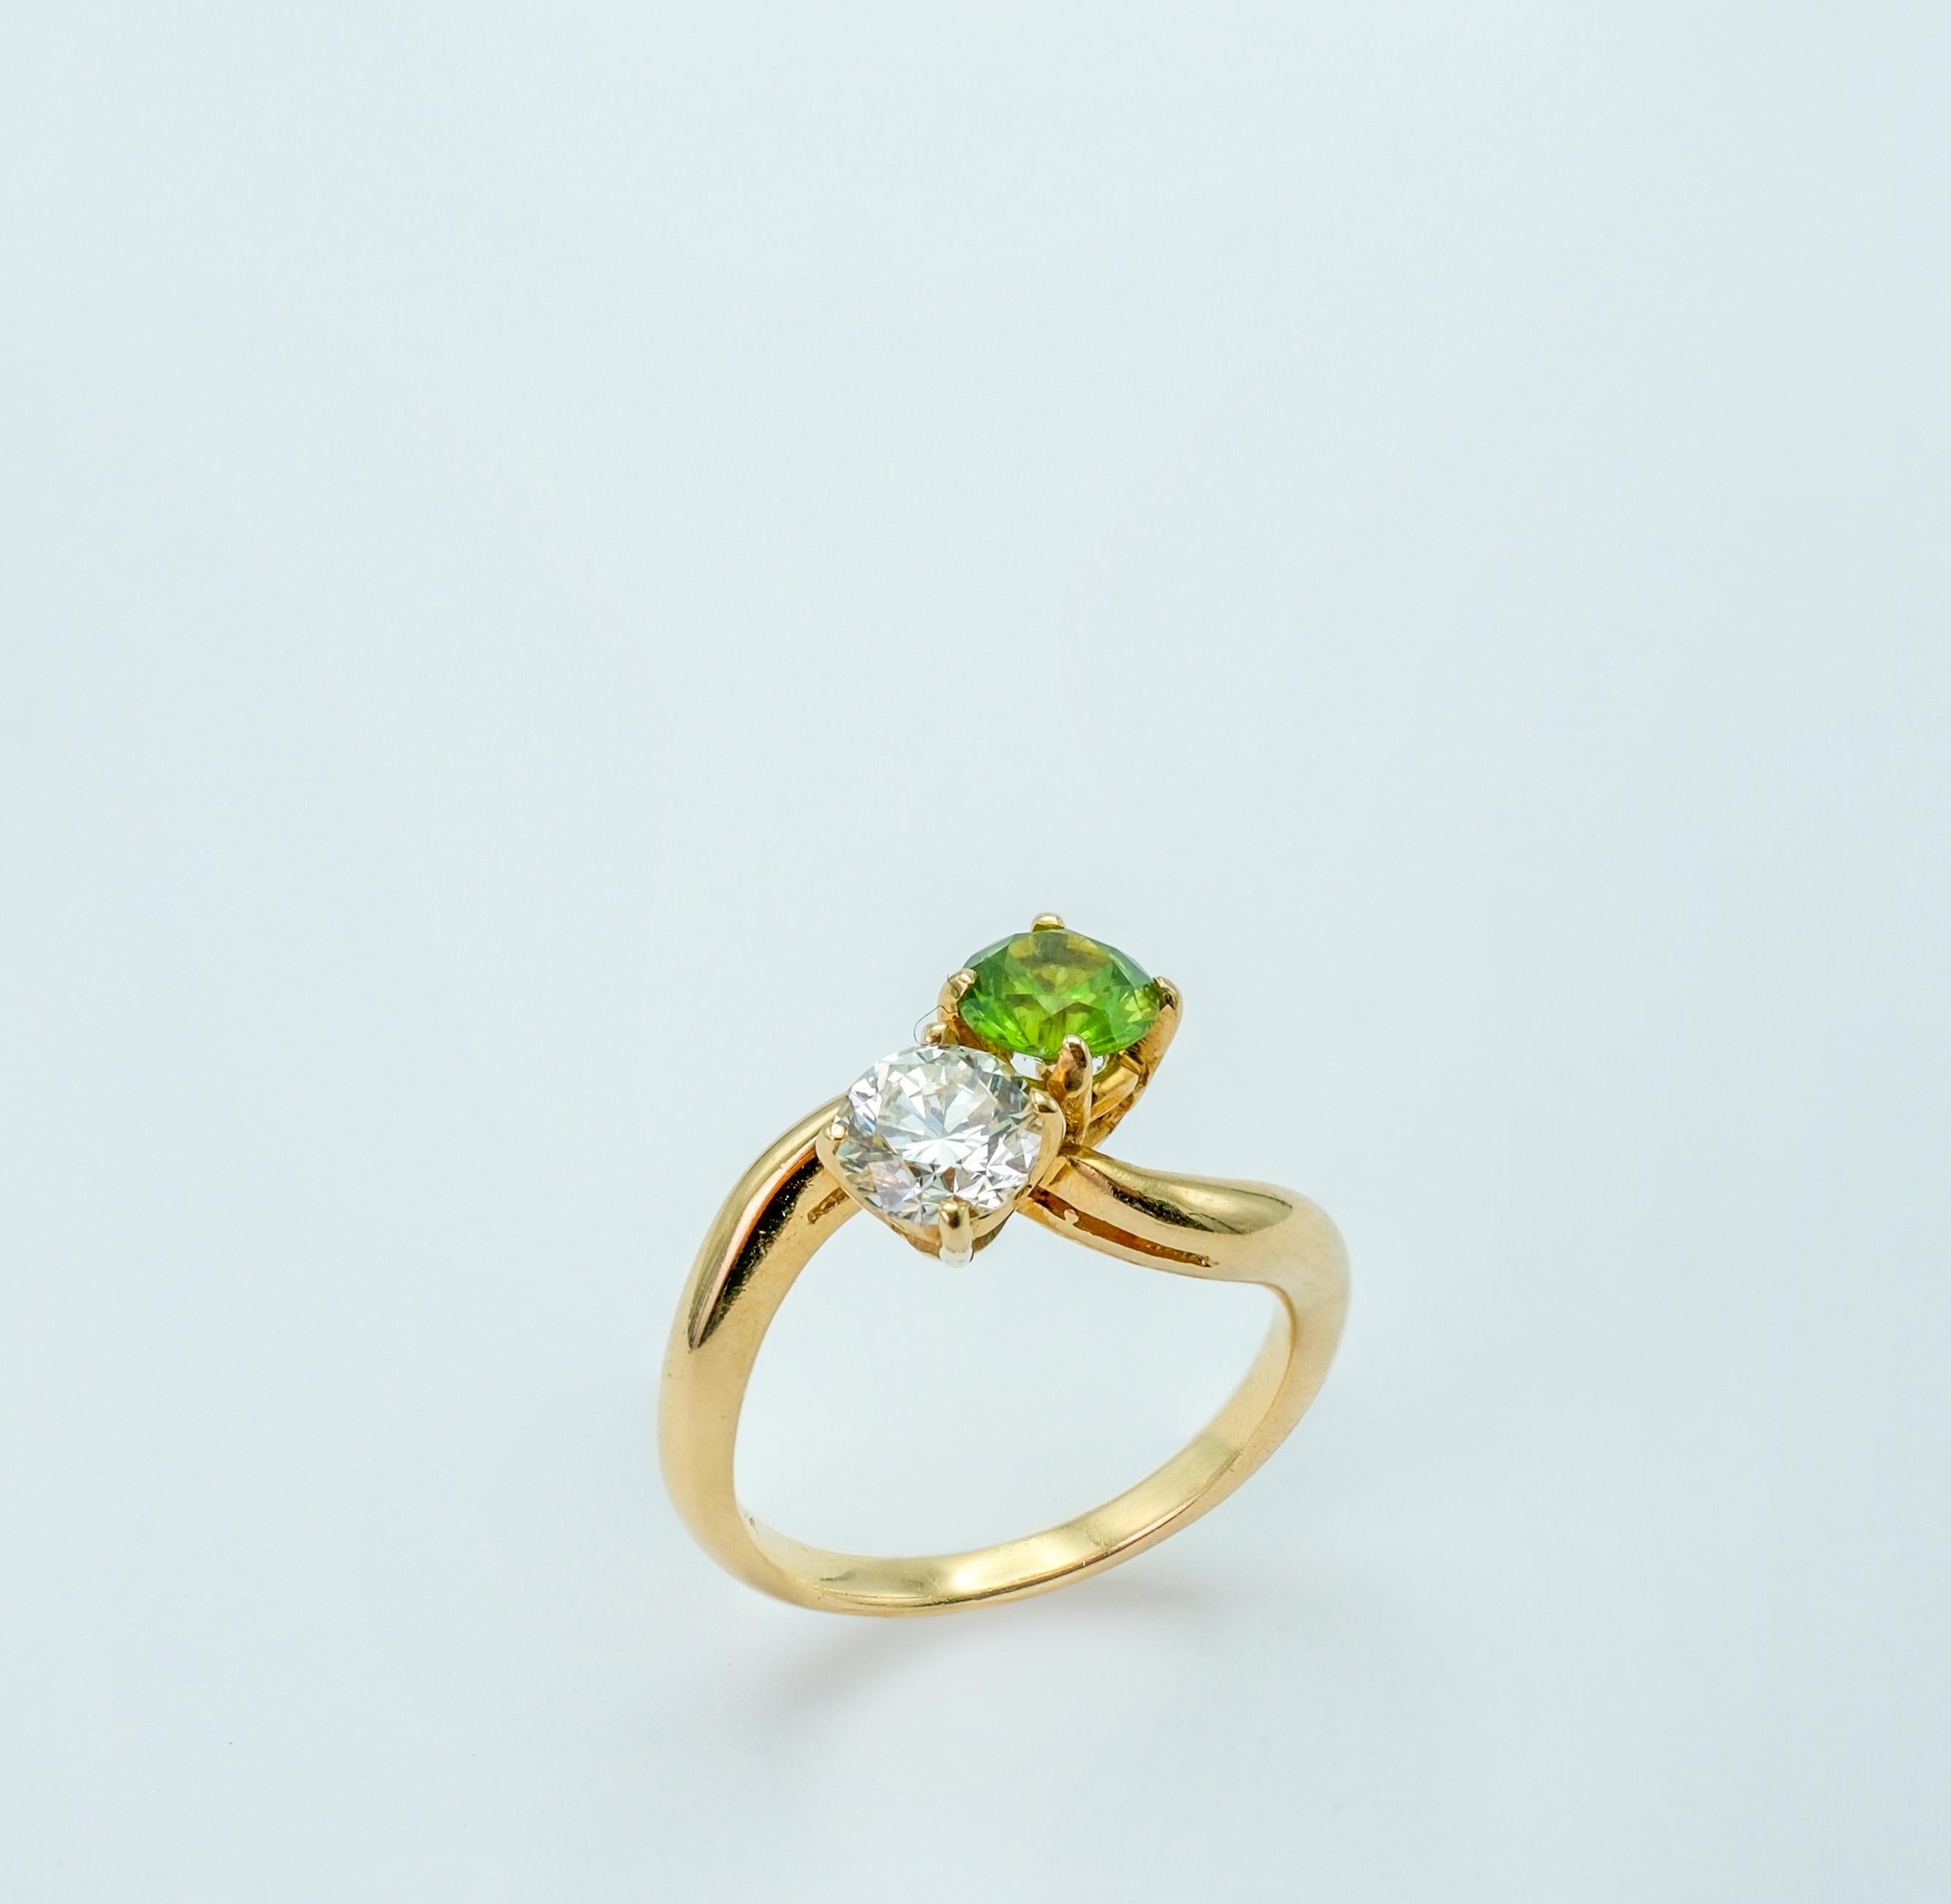 Le grenat démantoïde et le diamant présentés dans ce bijou possèdent tous deux des qualités exceptionnelles qui contribuent à leur nature luxueuse et particulière.

Le grenat démantoïde, d'une taille de 0,85ct, présente une couleur verte fascinante